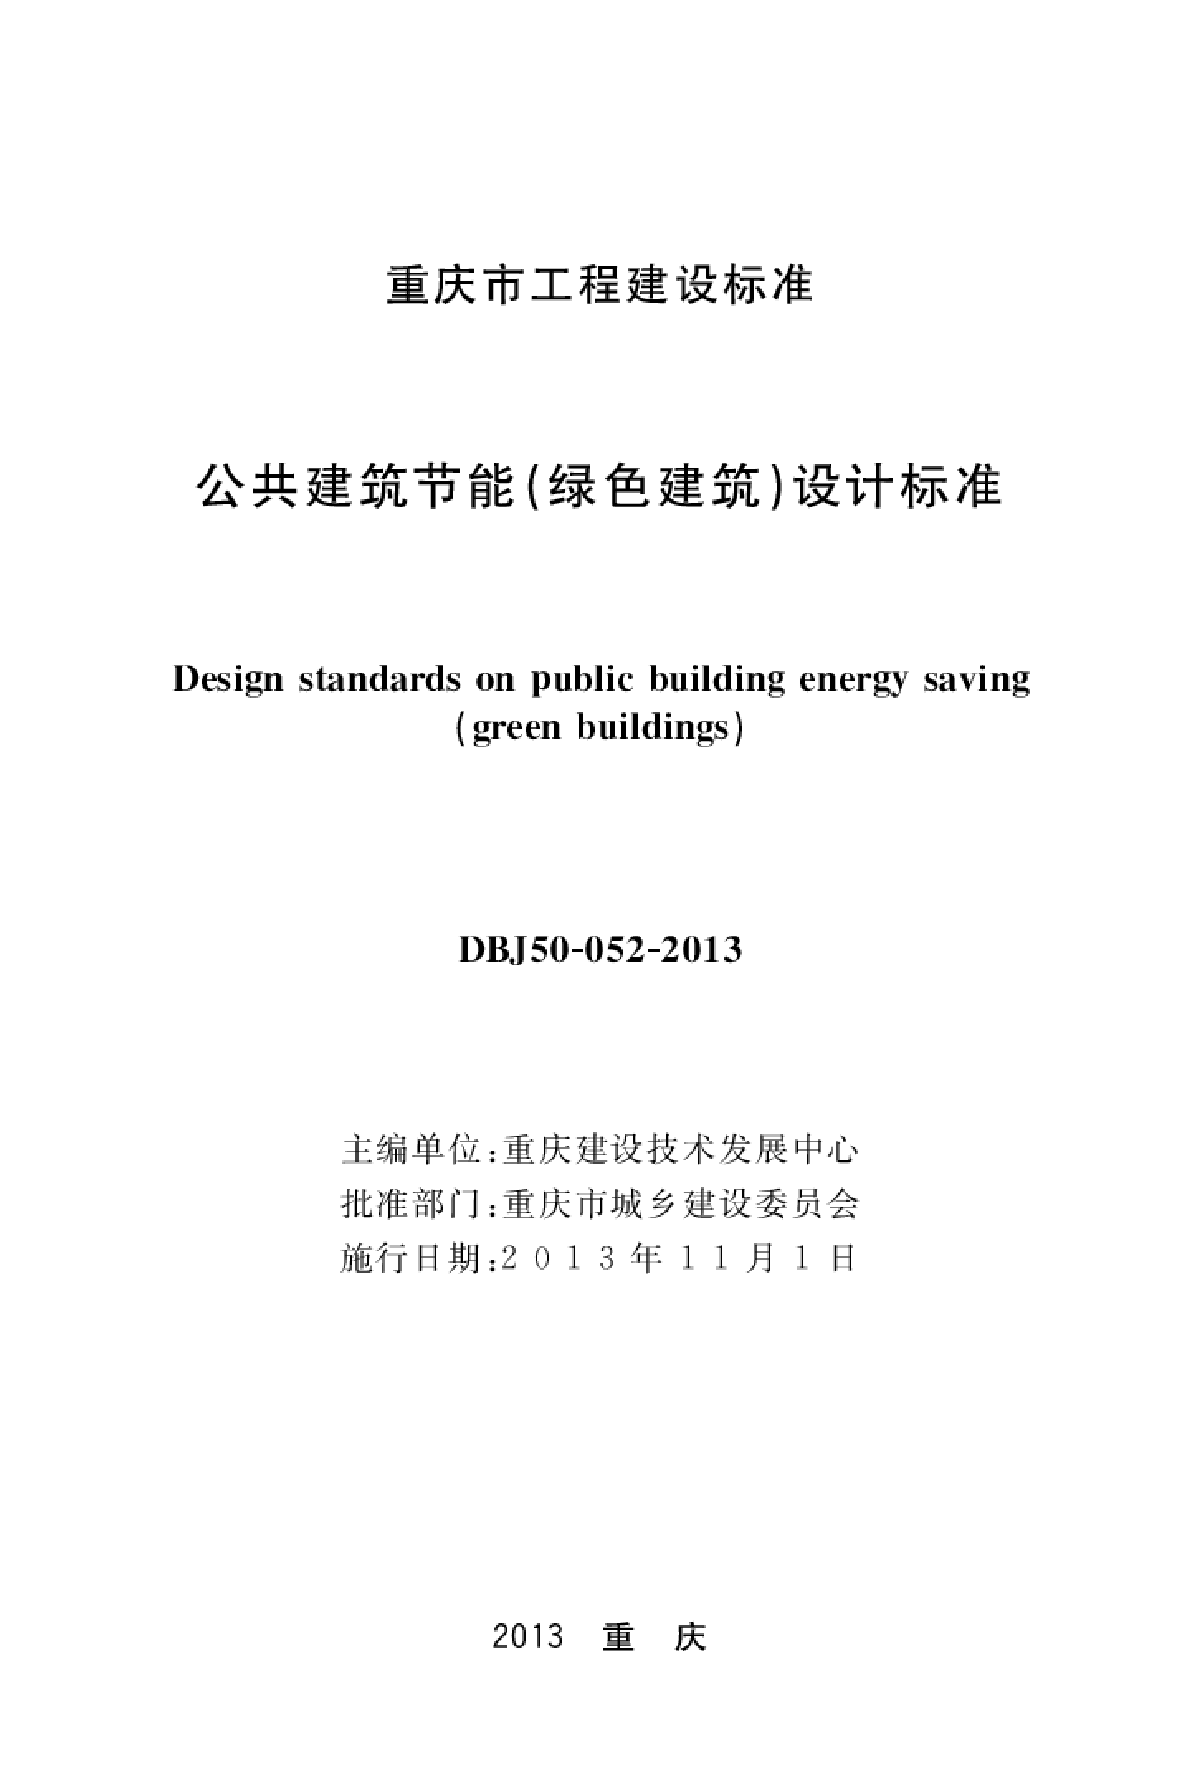 重庆地标《公共建筑节能（绿色建筑）设计标准》DBJ50-052-2013-图一